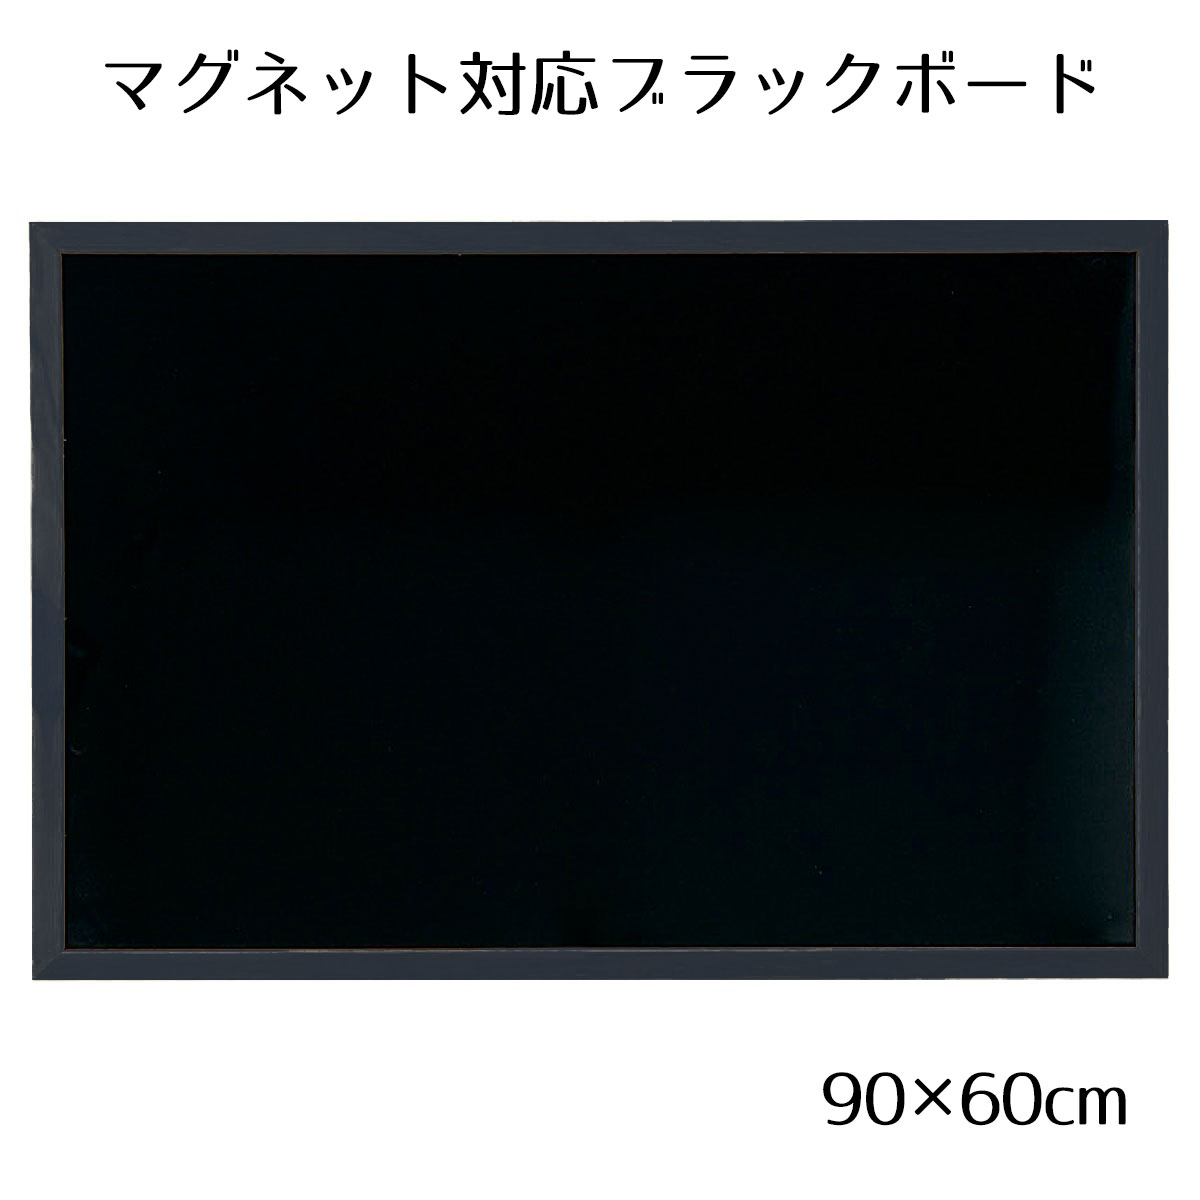  blackboard black board signboard ornament _ black board 90×60cm black one side 1 sheets _61-555-73-2_37176-197